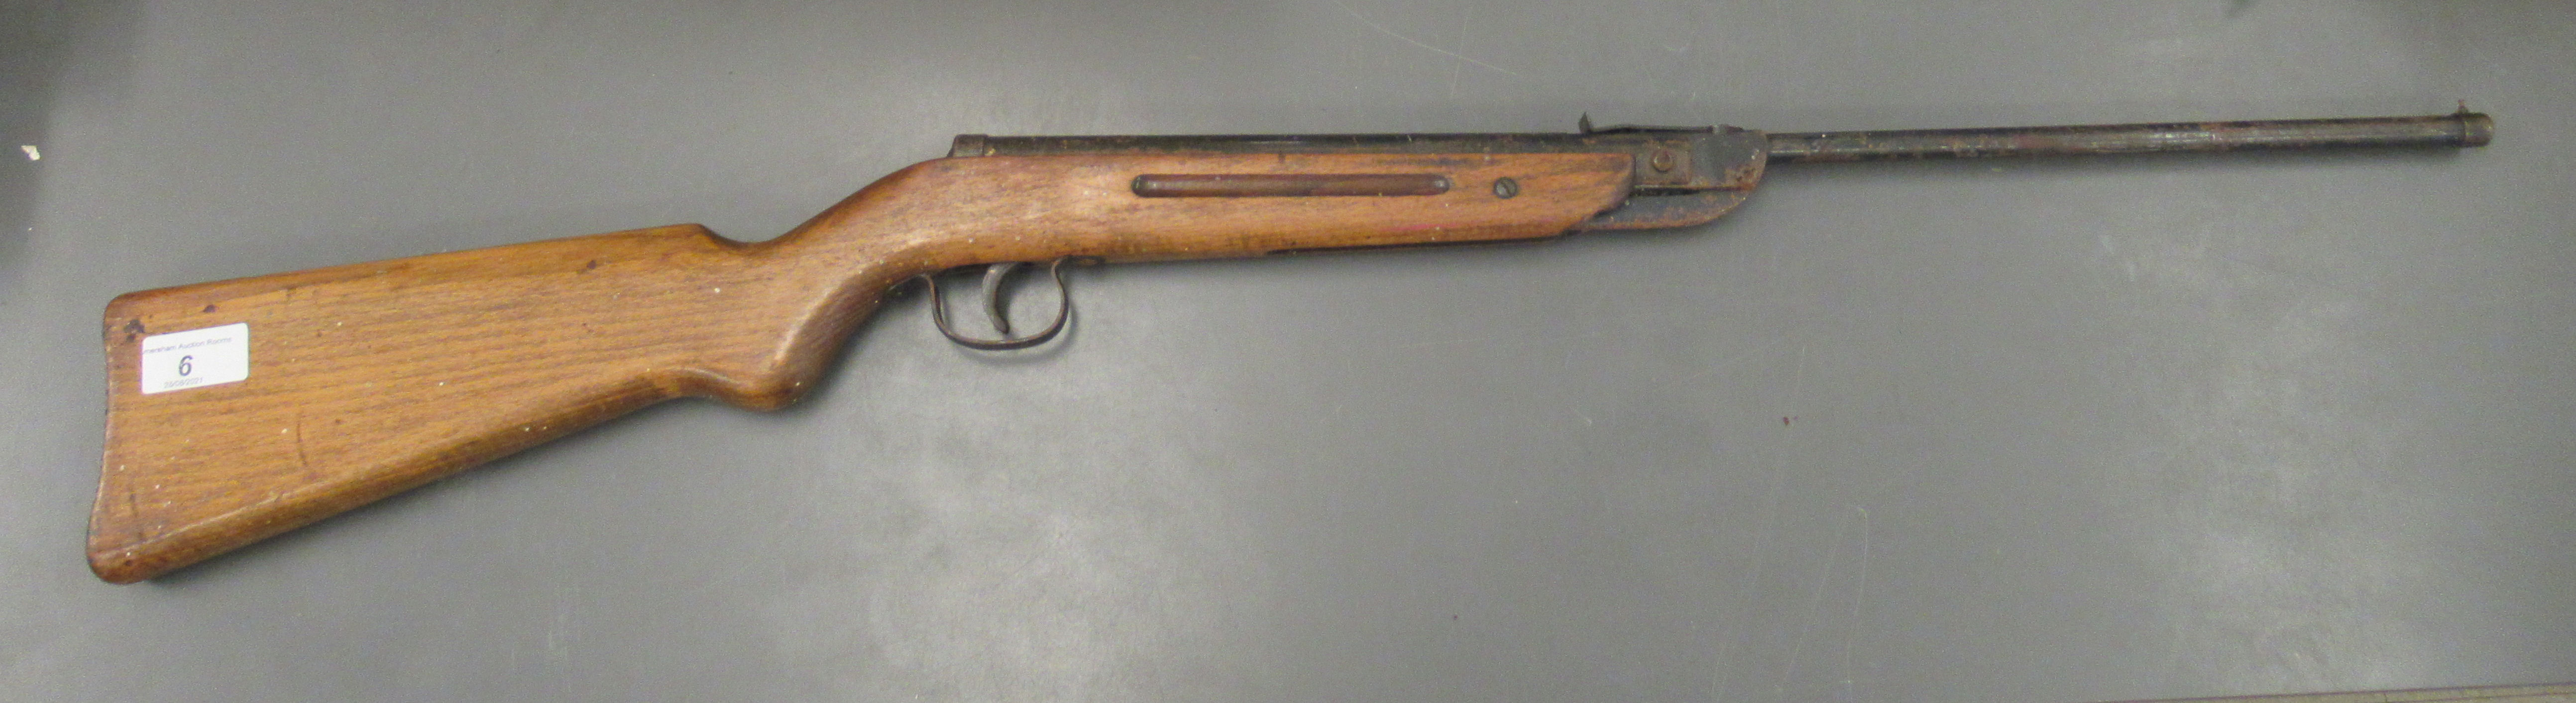 A Diana .22 calibre air rifle